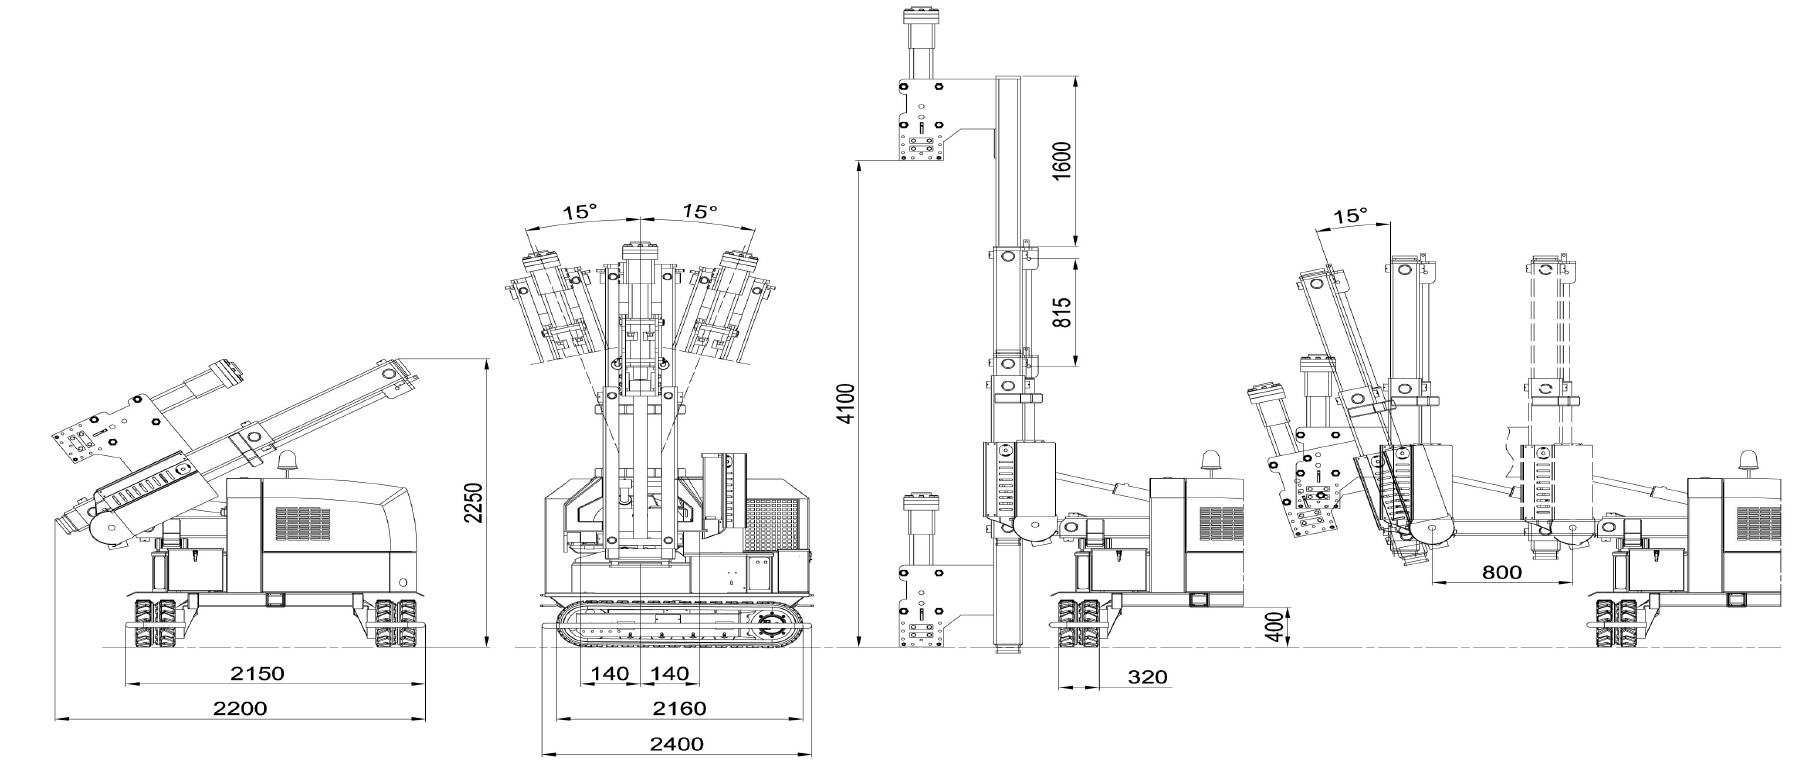 Maße und technische Zeichnung eines Rammgeräts des Modells 900